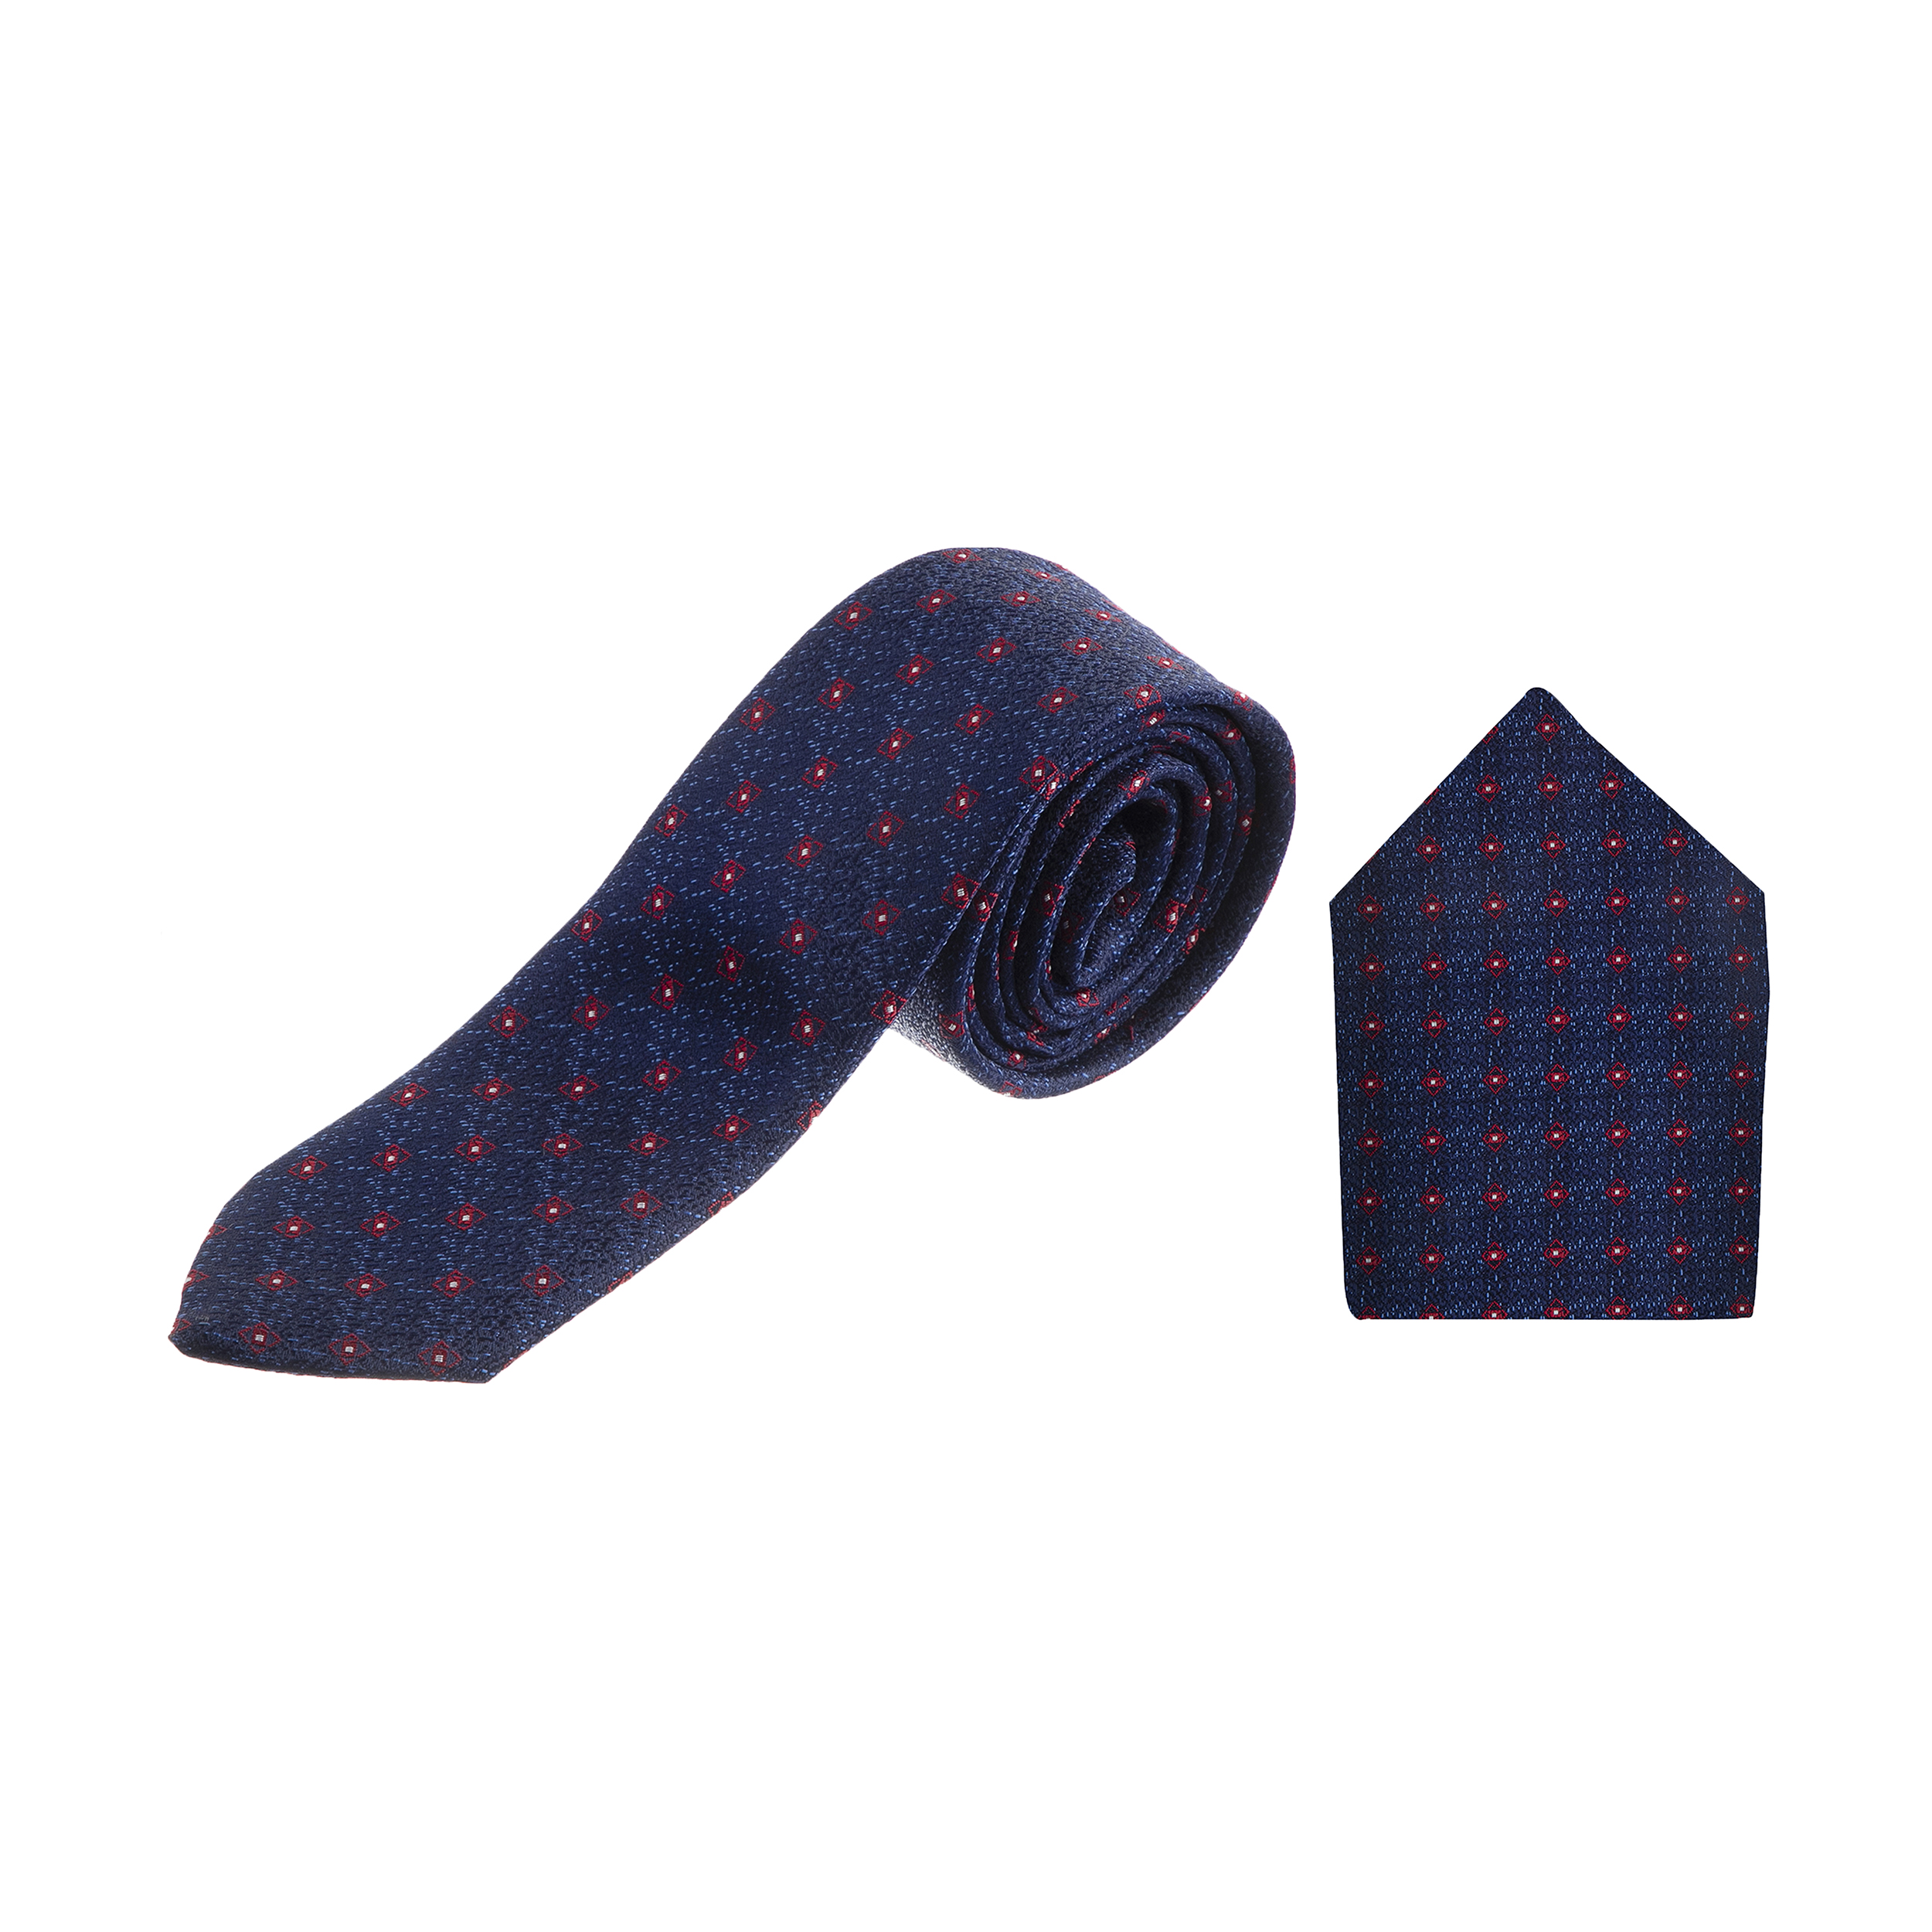 ست کراوات و دستمال جیب مردانه سردانالو مدل ایتالیا